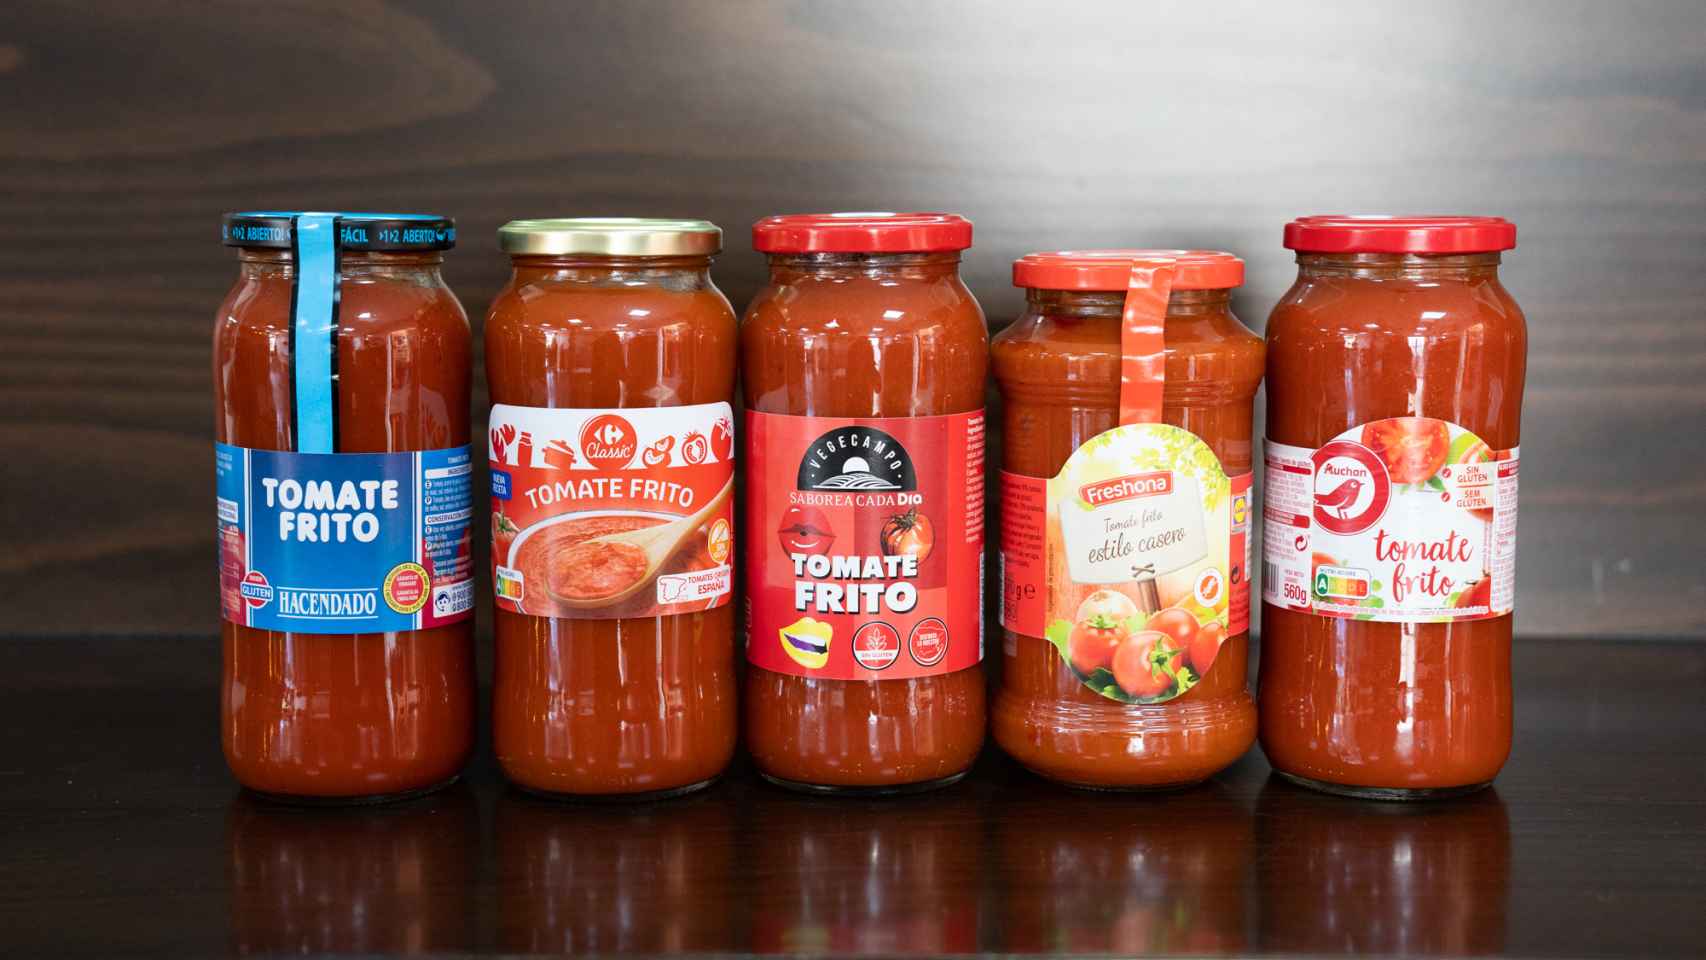 Las cinco salsas de tomate frito de los supermercados testadas en la cata.